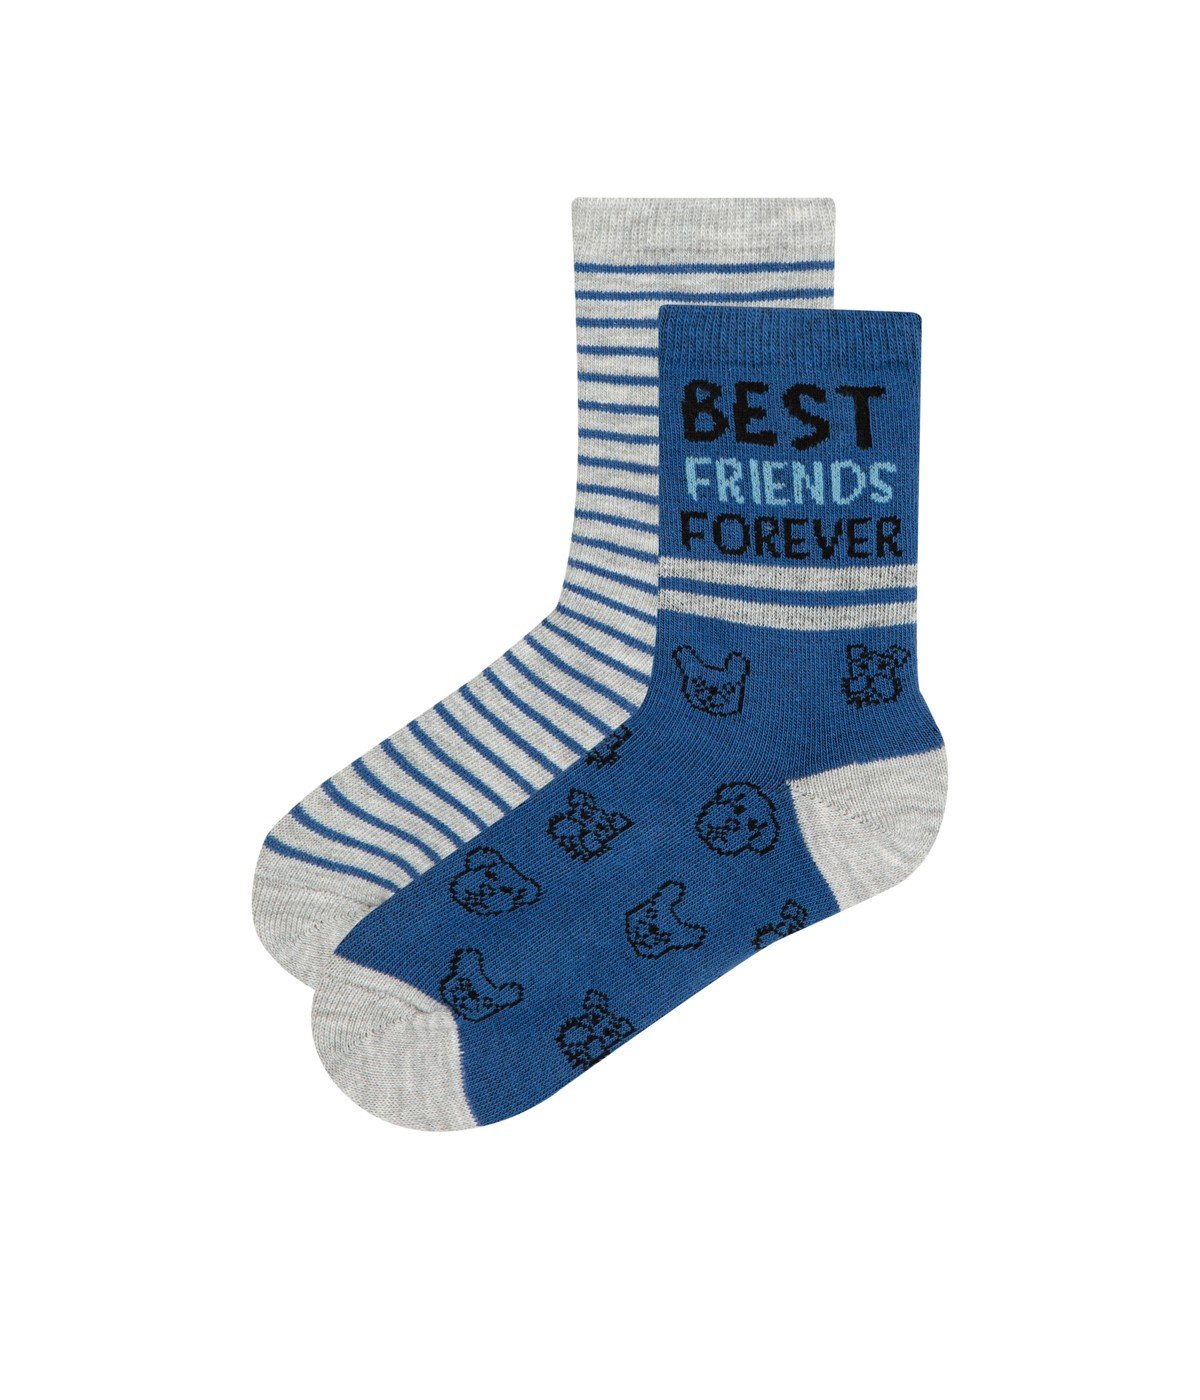 Boys Best Firends 2in1 Socks